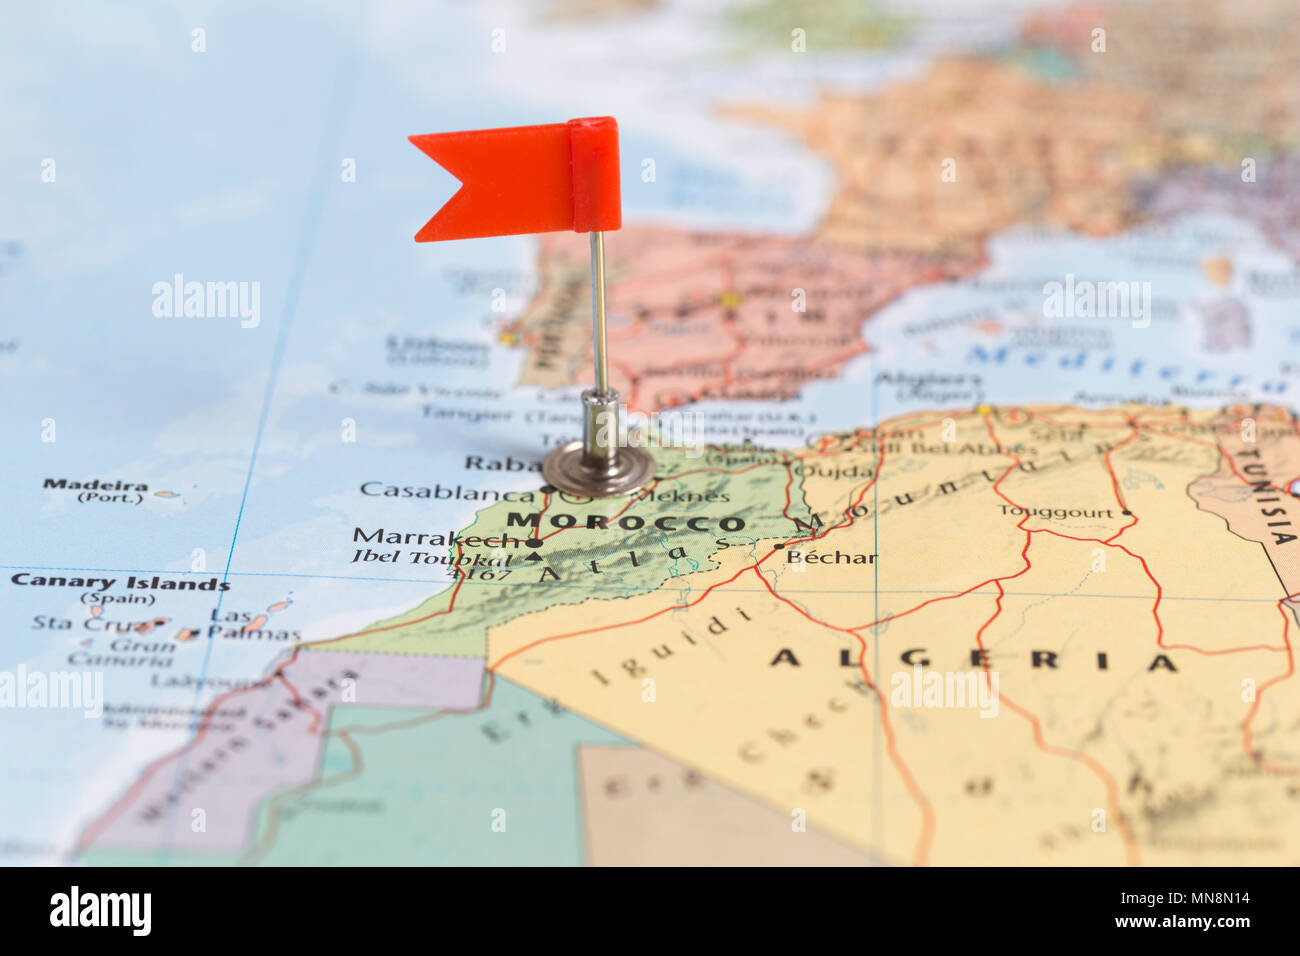 La pequeña bandera roja marcando el país africano de Marruecos en un mapa del mundo. Foto de stock